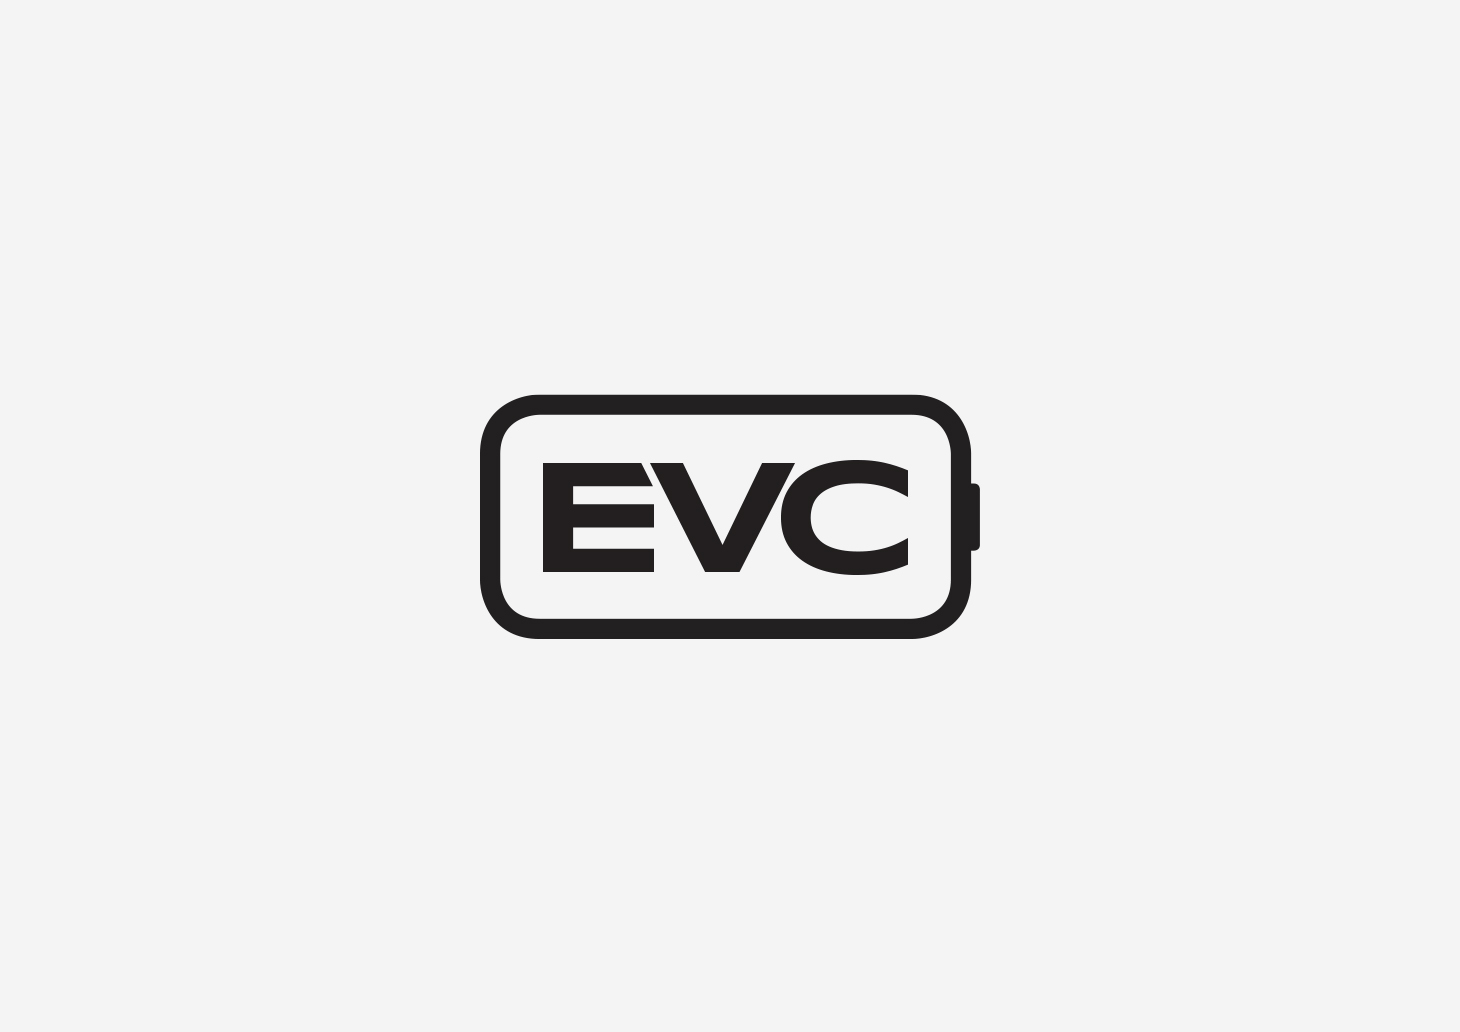 brand-identity-evc-example-1